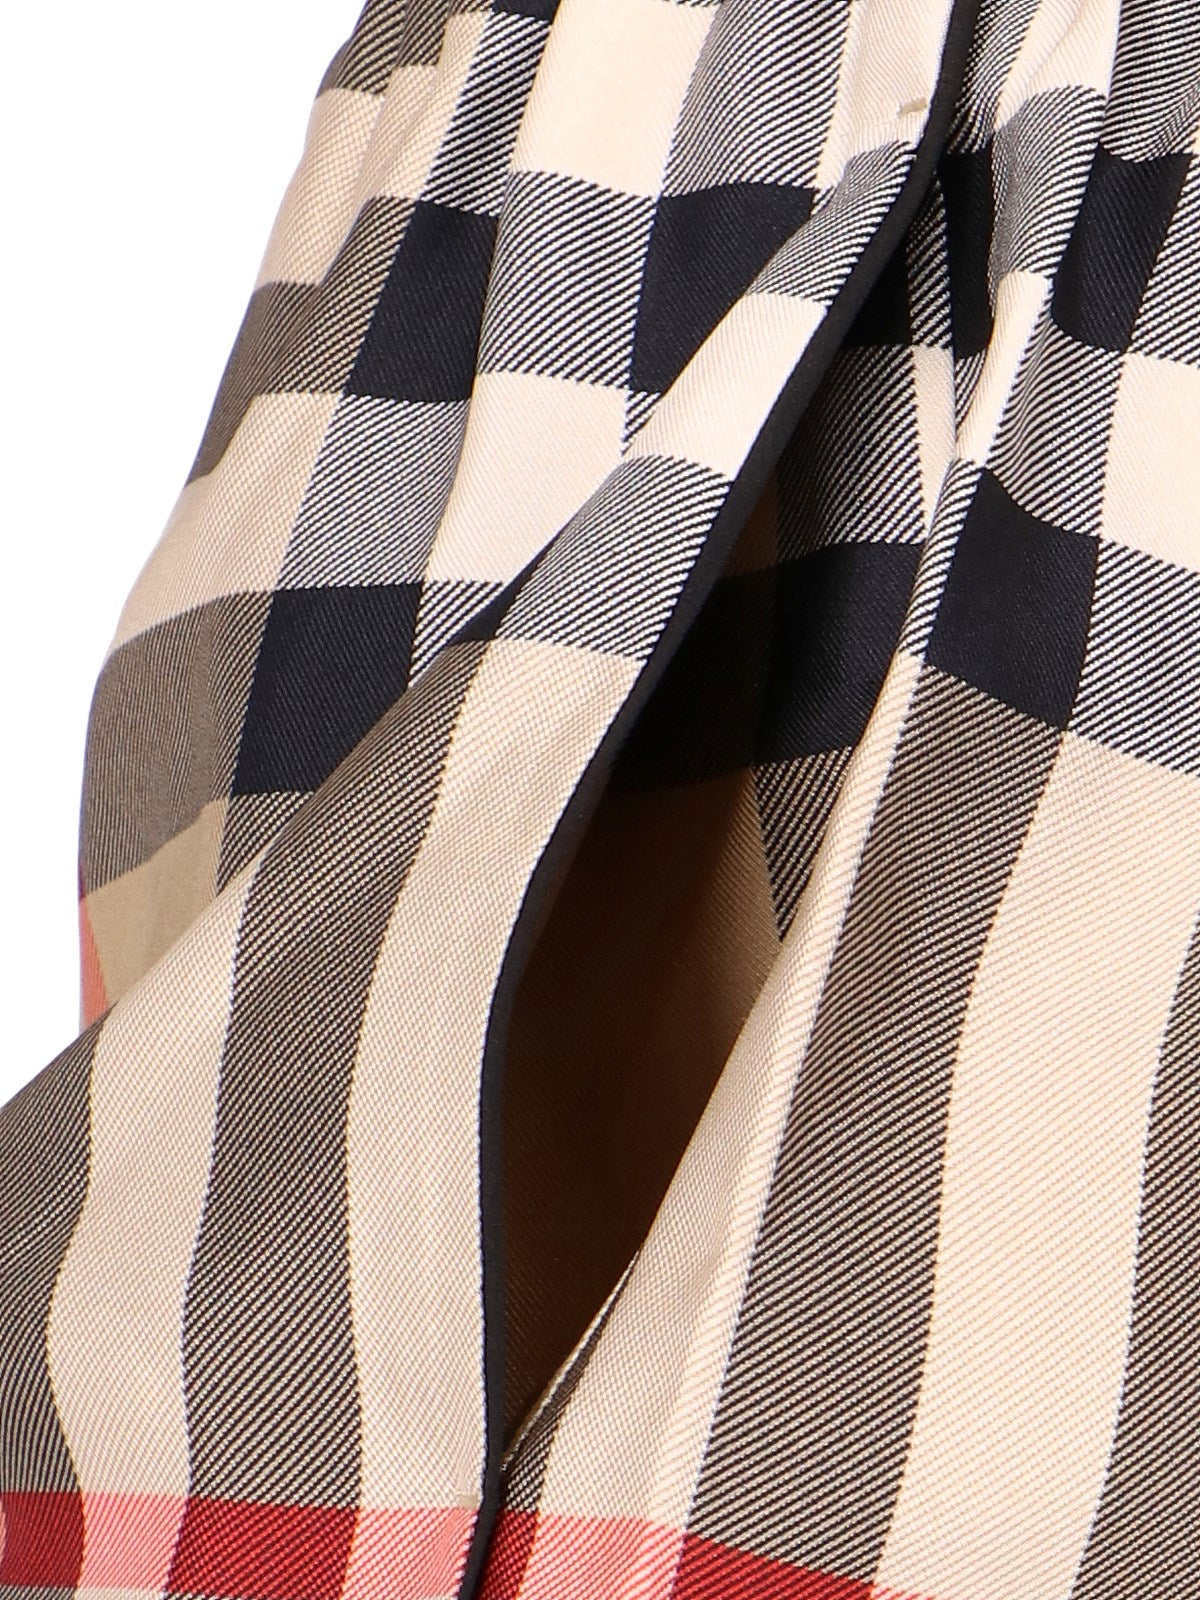 Burberry Pantaloncini in seta-Short-Burberry-Pantaloncini in seta Burberry, beige, motivo tartan tricolore, vita media elasticizzata a costine, due tasche laterali.-Dresso